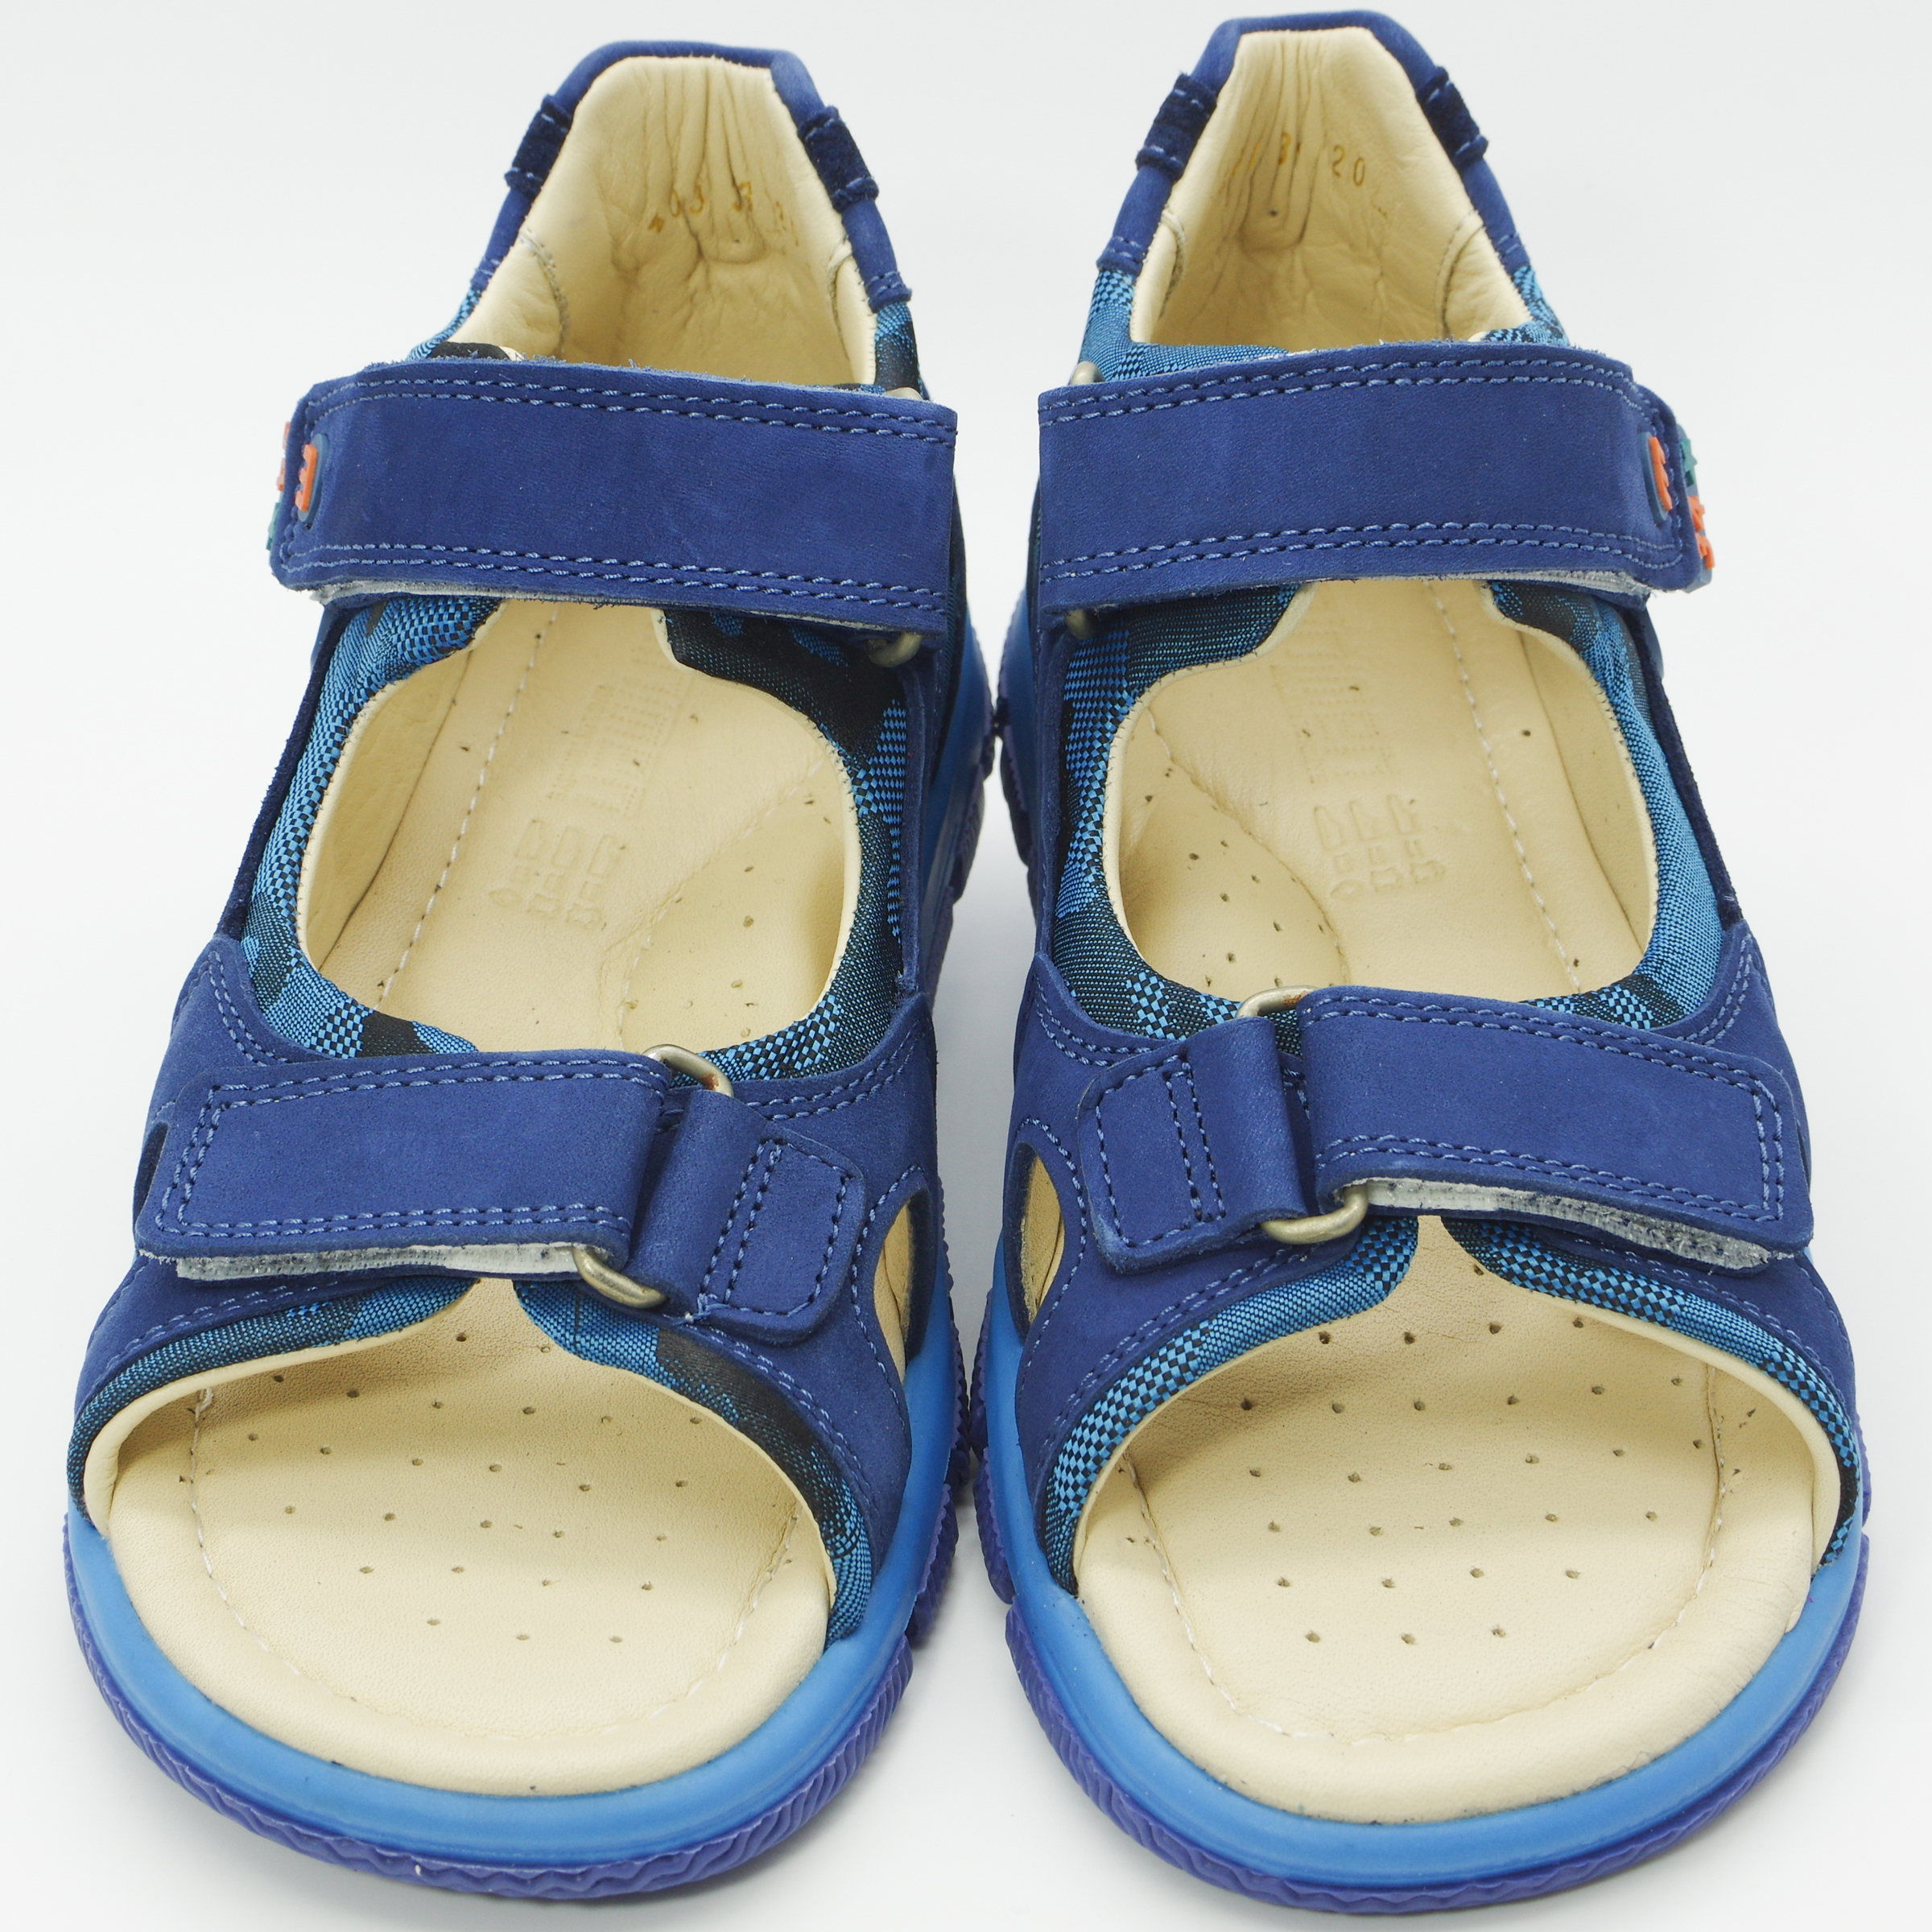 Сандалії для хлопчиків (2096) для хлопчика, матеріал Нубук, Синій колір, 31-36 розміри – Sole Kids. Фото 2